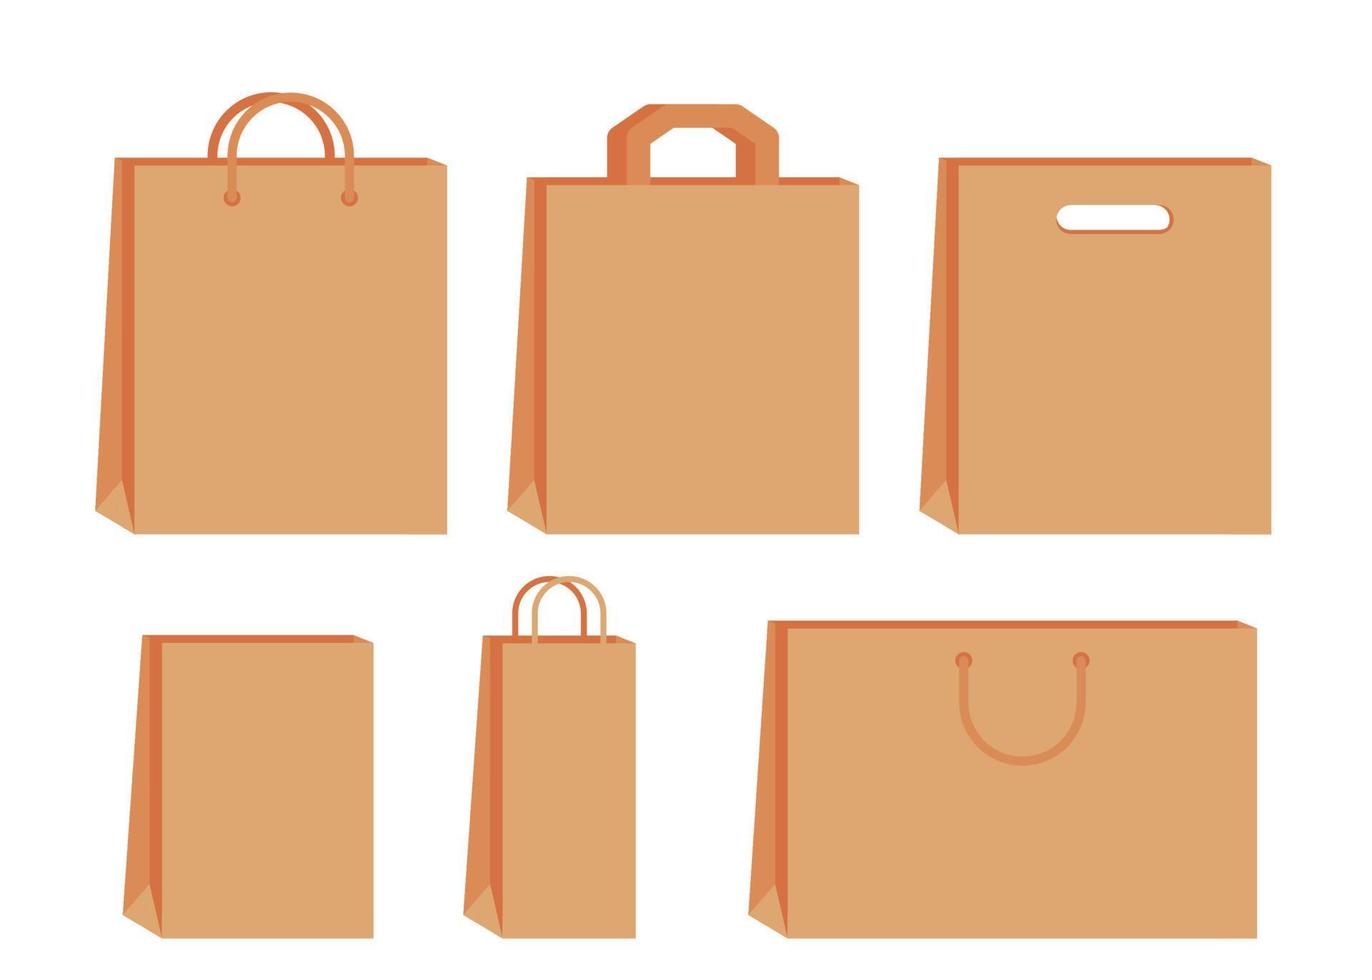 papper väska med hantera mall av handla uppsättning. brun hantverk papper packa för gåva, mat, Artikel. affär, mataffär paket, detaljhandeln förpackning. ta bort, leverans i eco väska. prototyper främre se. vektor